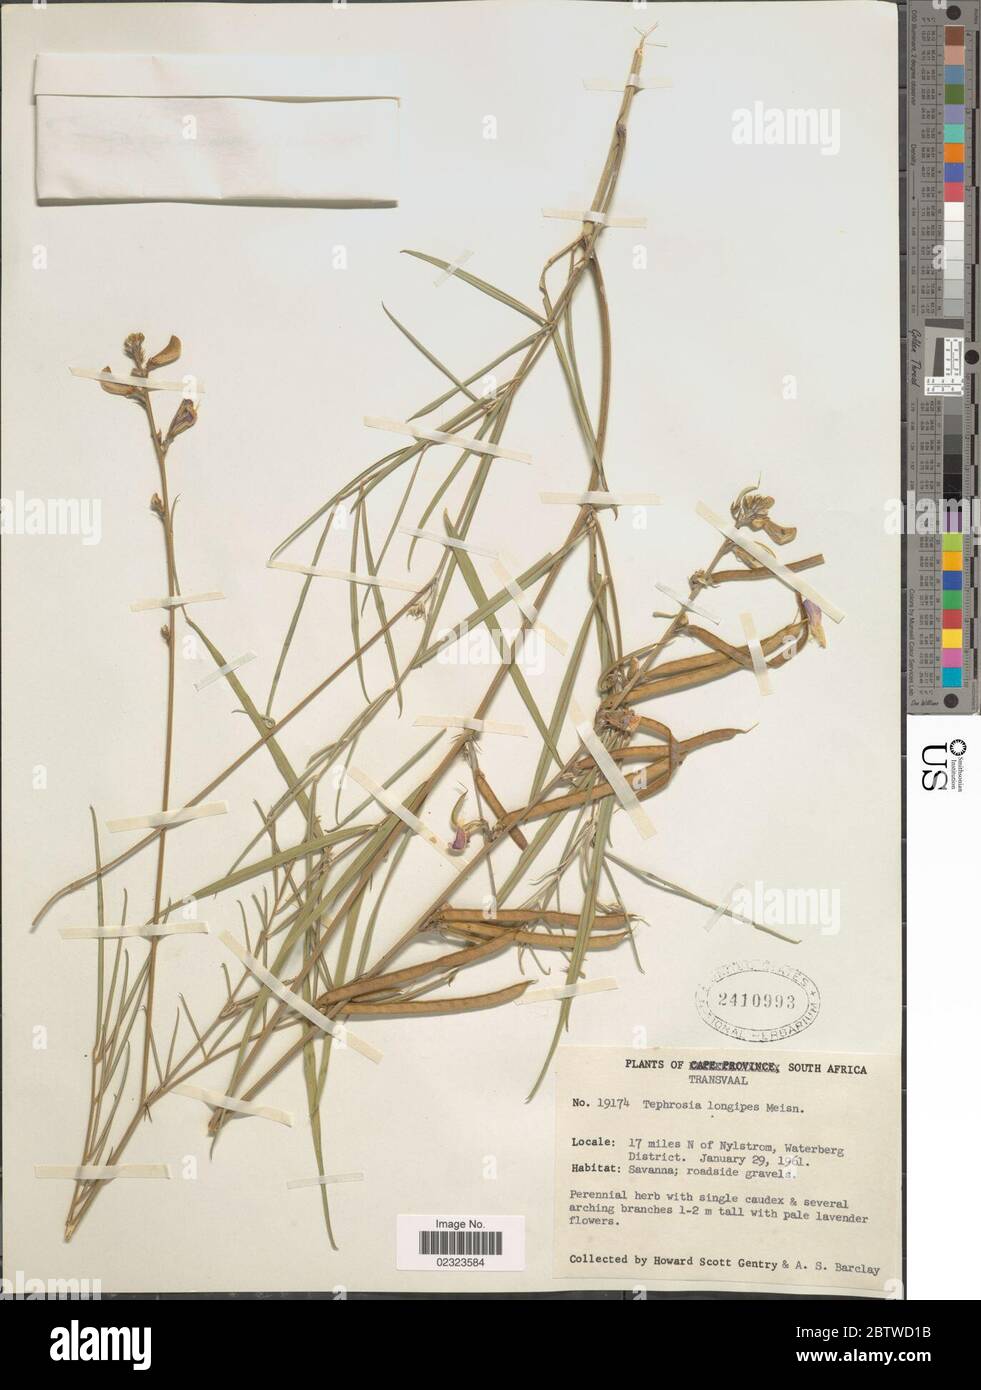 Tephrosia longipes Meisn. Stock Photo